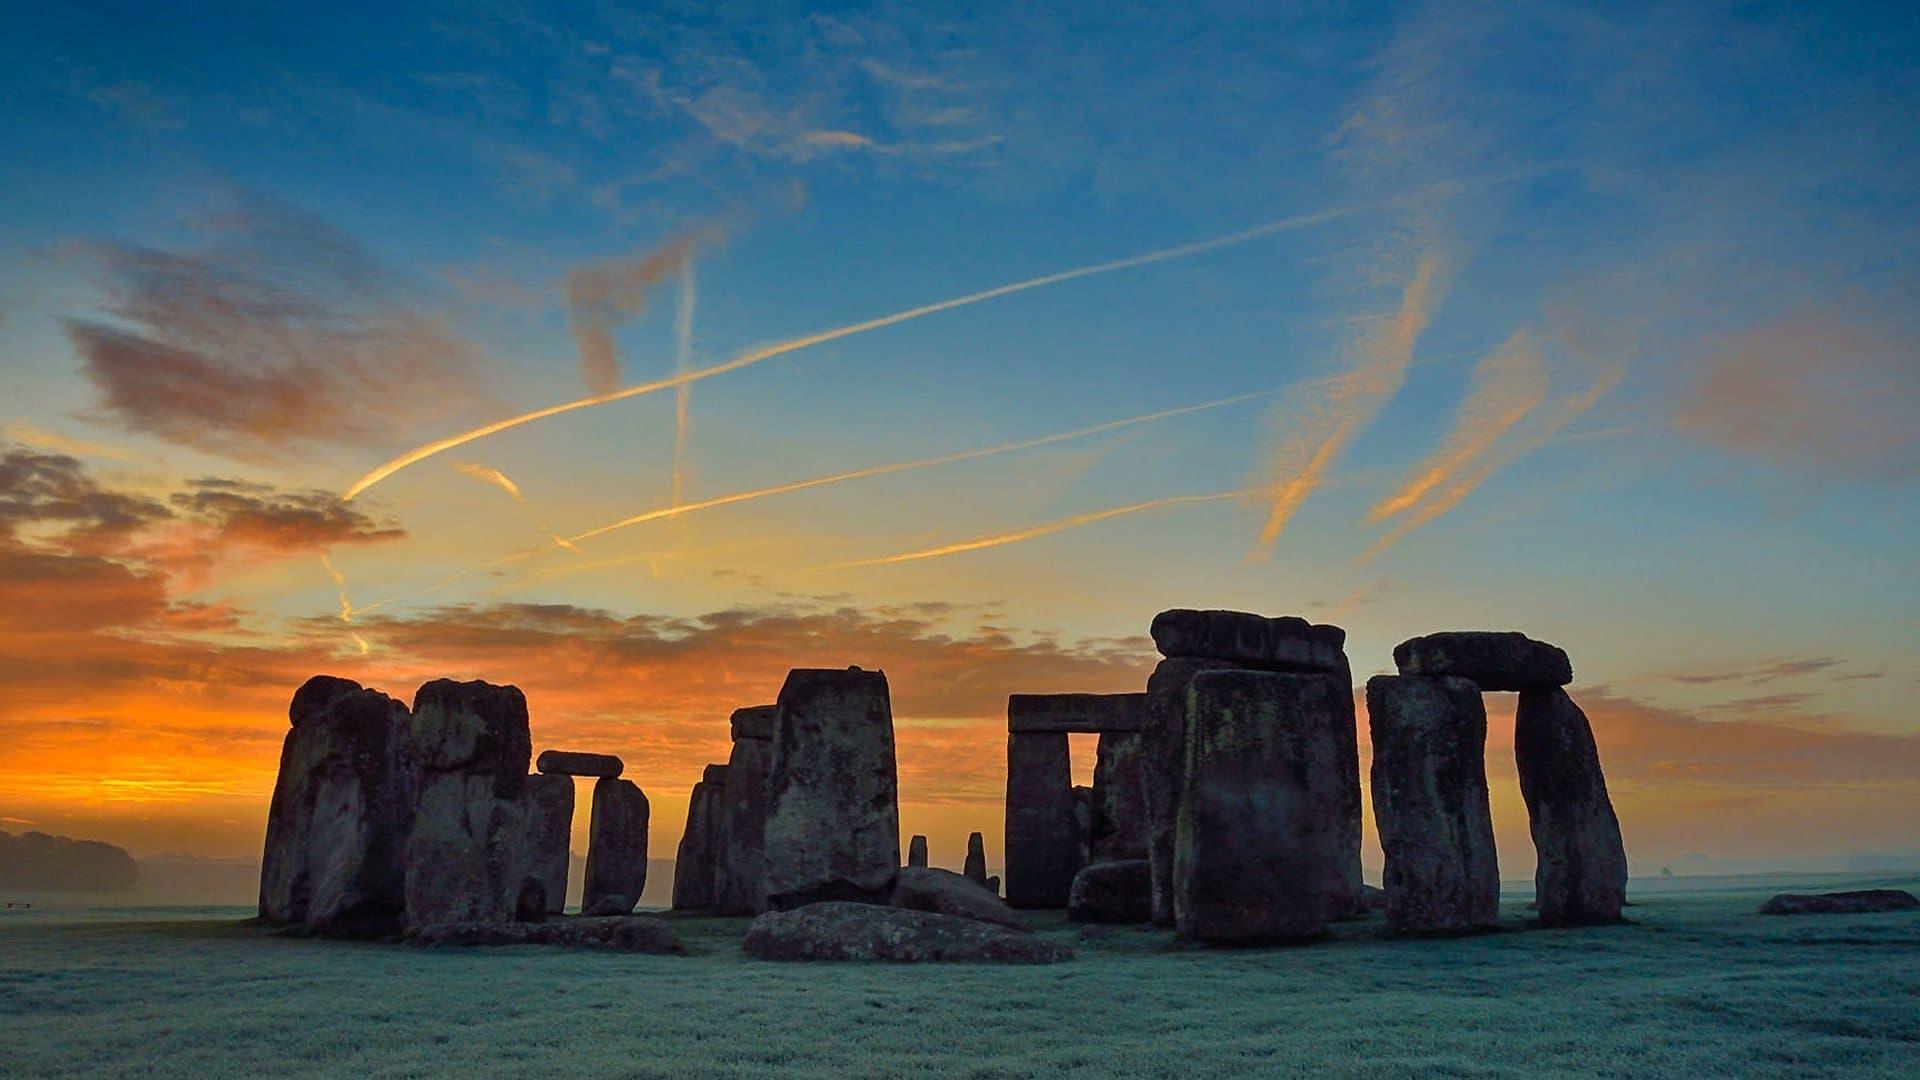 Stonehenge: The Lost Circle Revealed backdrop